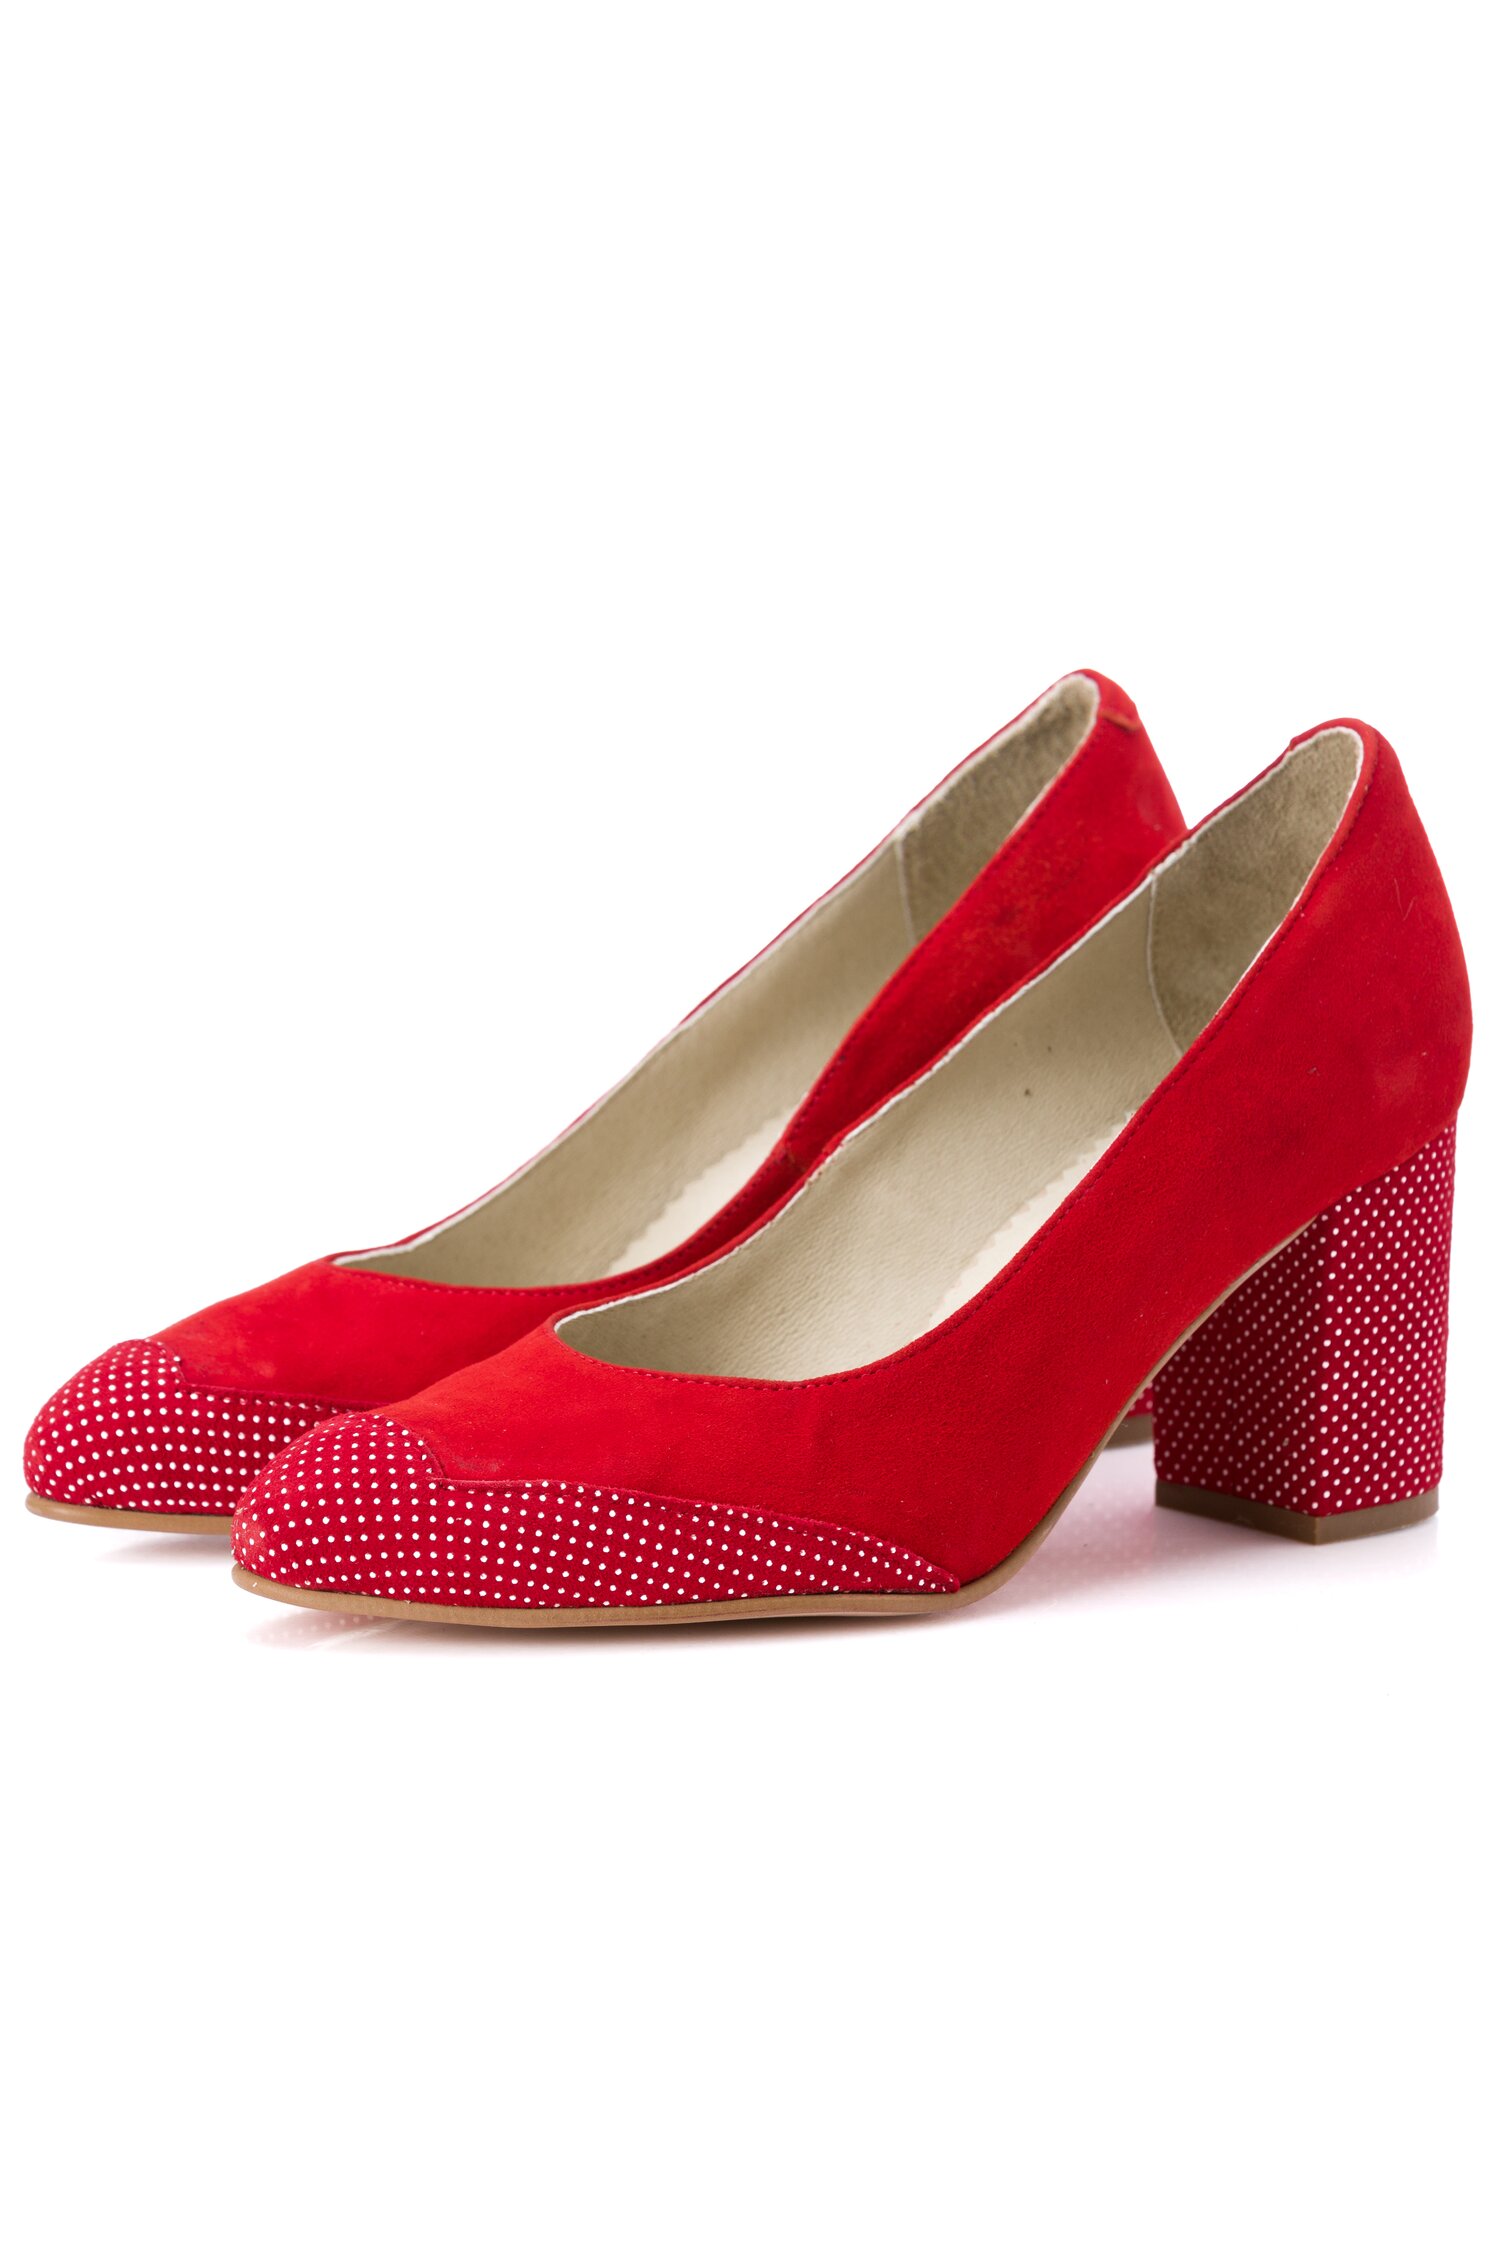 Pantofi rosii cu toc gros si imprimeu cu buline dyfashion.ro dyfashion.ro